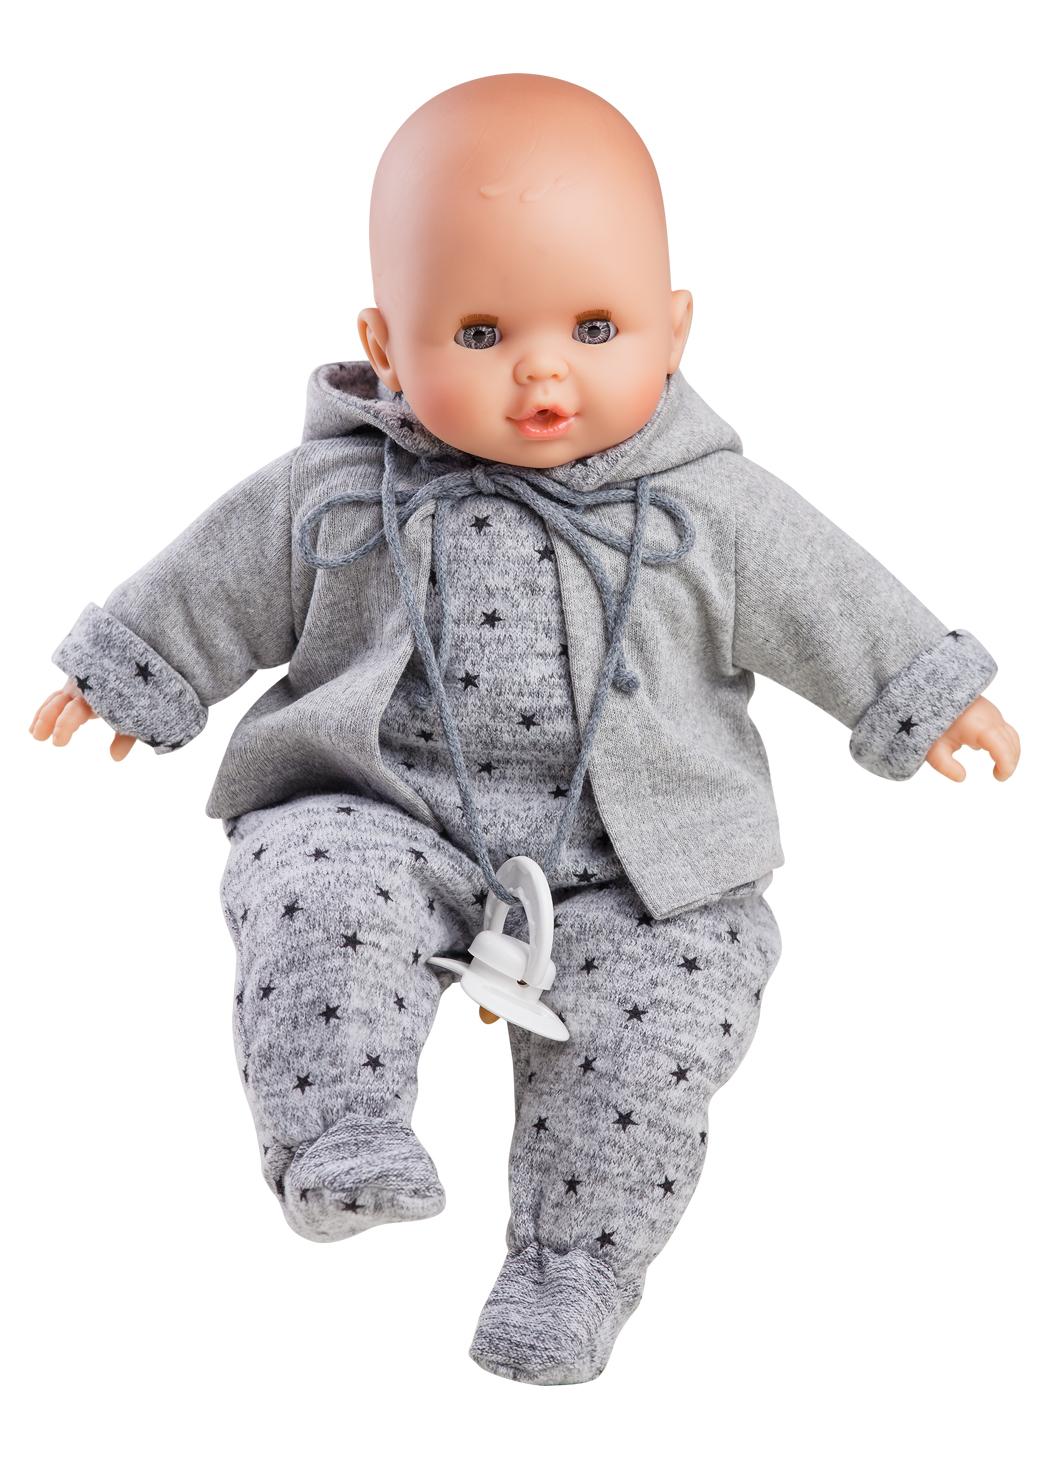 Realistické miminko - chlapeček Alex v šedém overálku od firmy Paola Reina